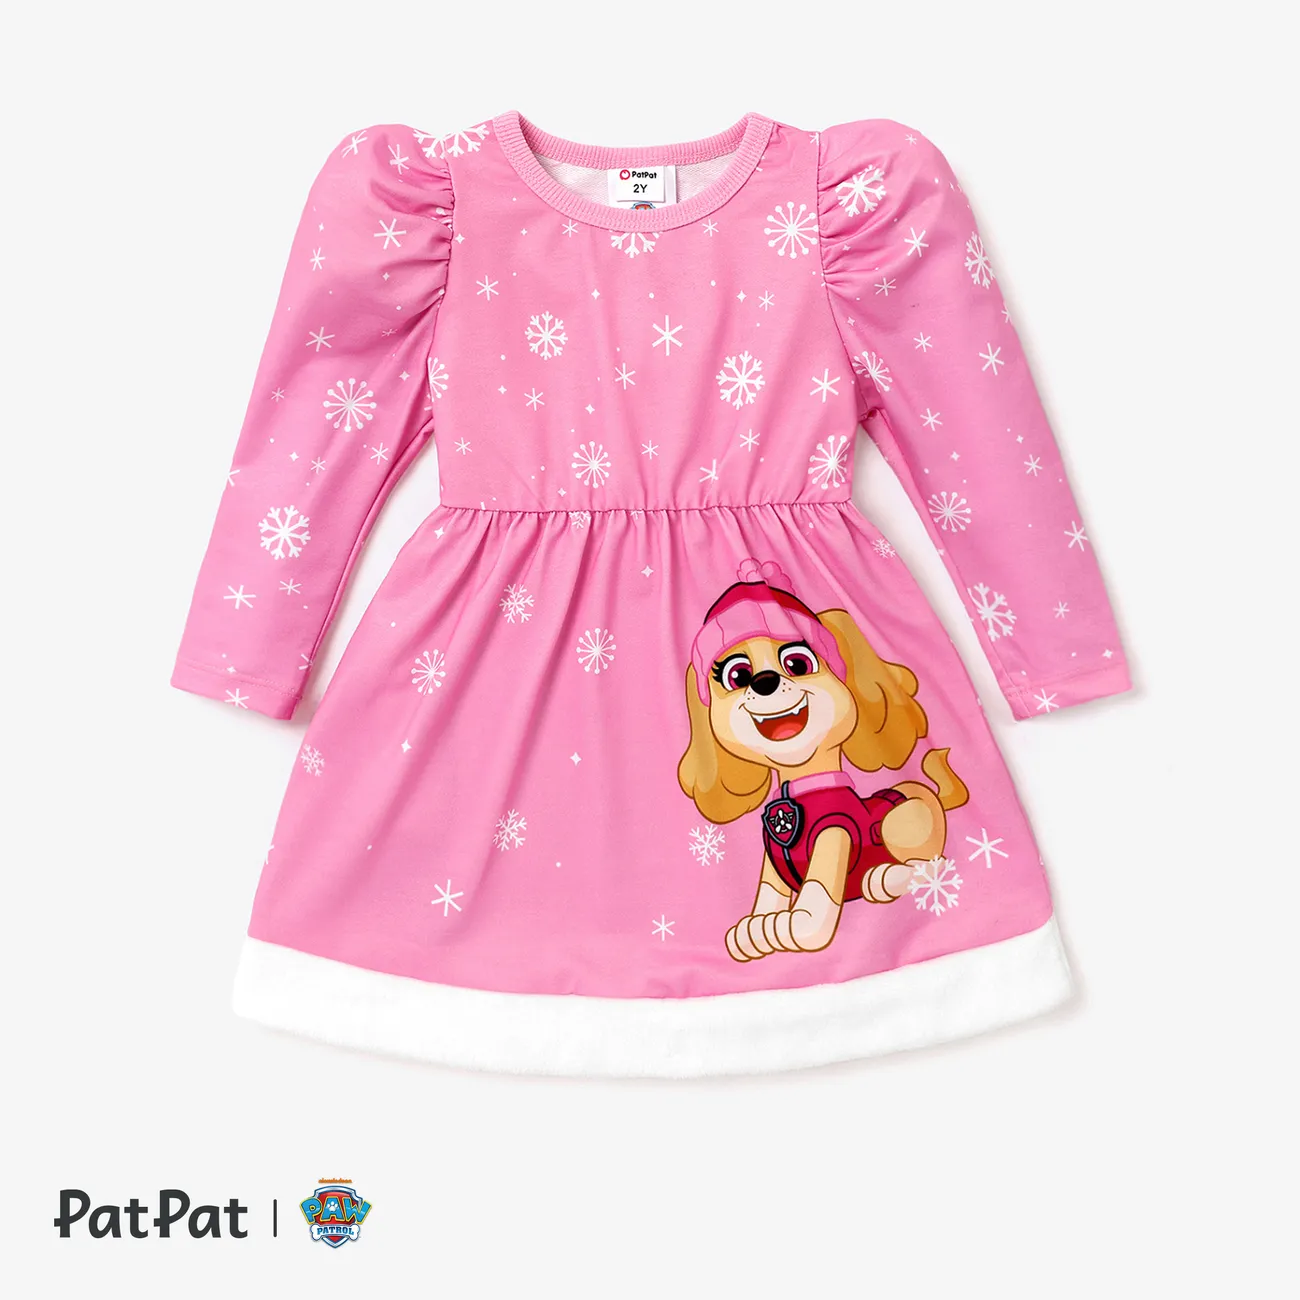 La Pat’ Patrouille Enfant en bas âge Fille Couture de tissus Enfantin Robes Rose big image 1